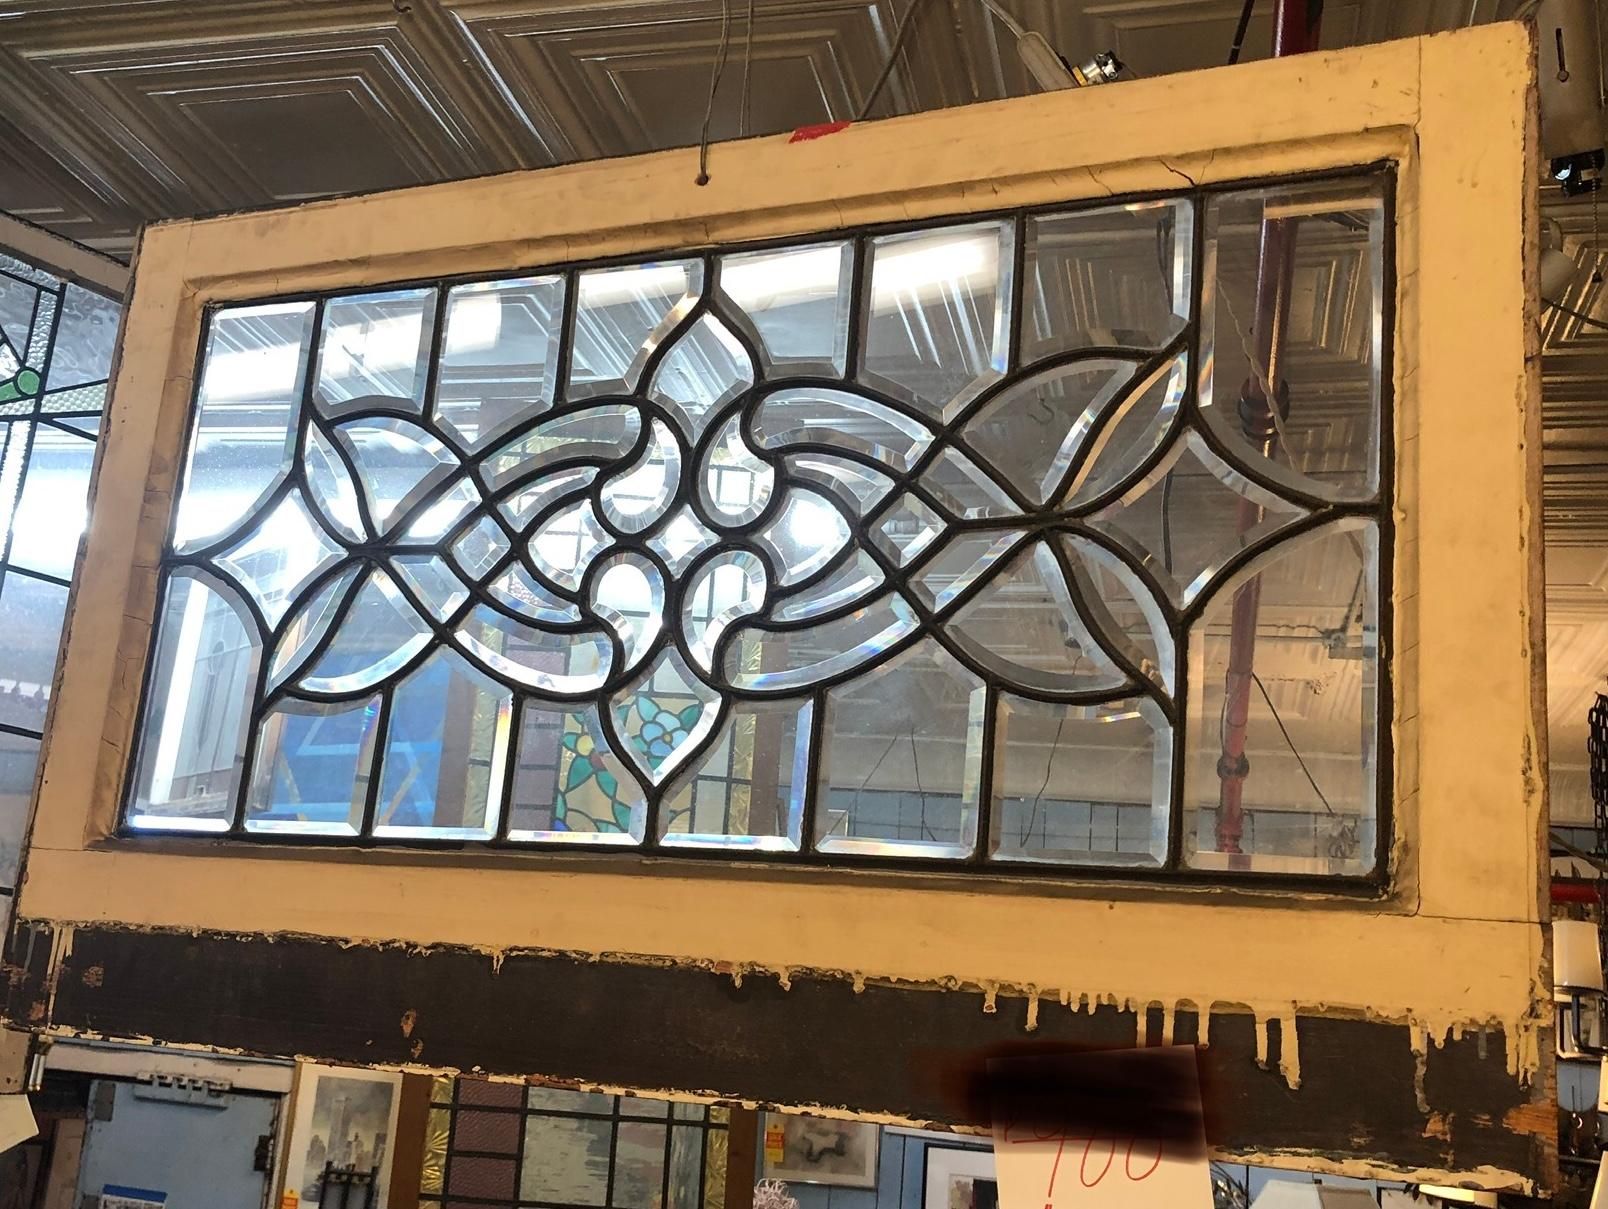 Fenêtre en verre américain avec design en plomb. Magnifique design/One composé de pièces en verre biseauté.
Le vitrail est actuellement placé dans un cadre temporaire en bois - les dimensions totales sont celles du vitrail et du cadre.
Situé à NY